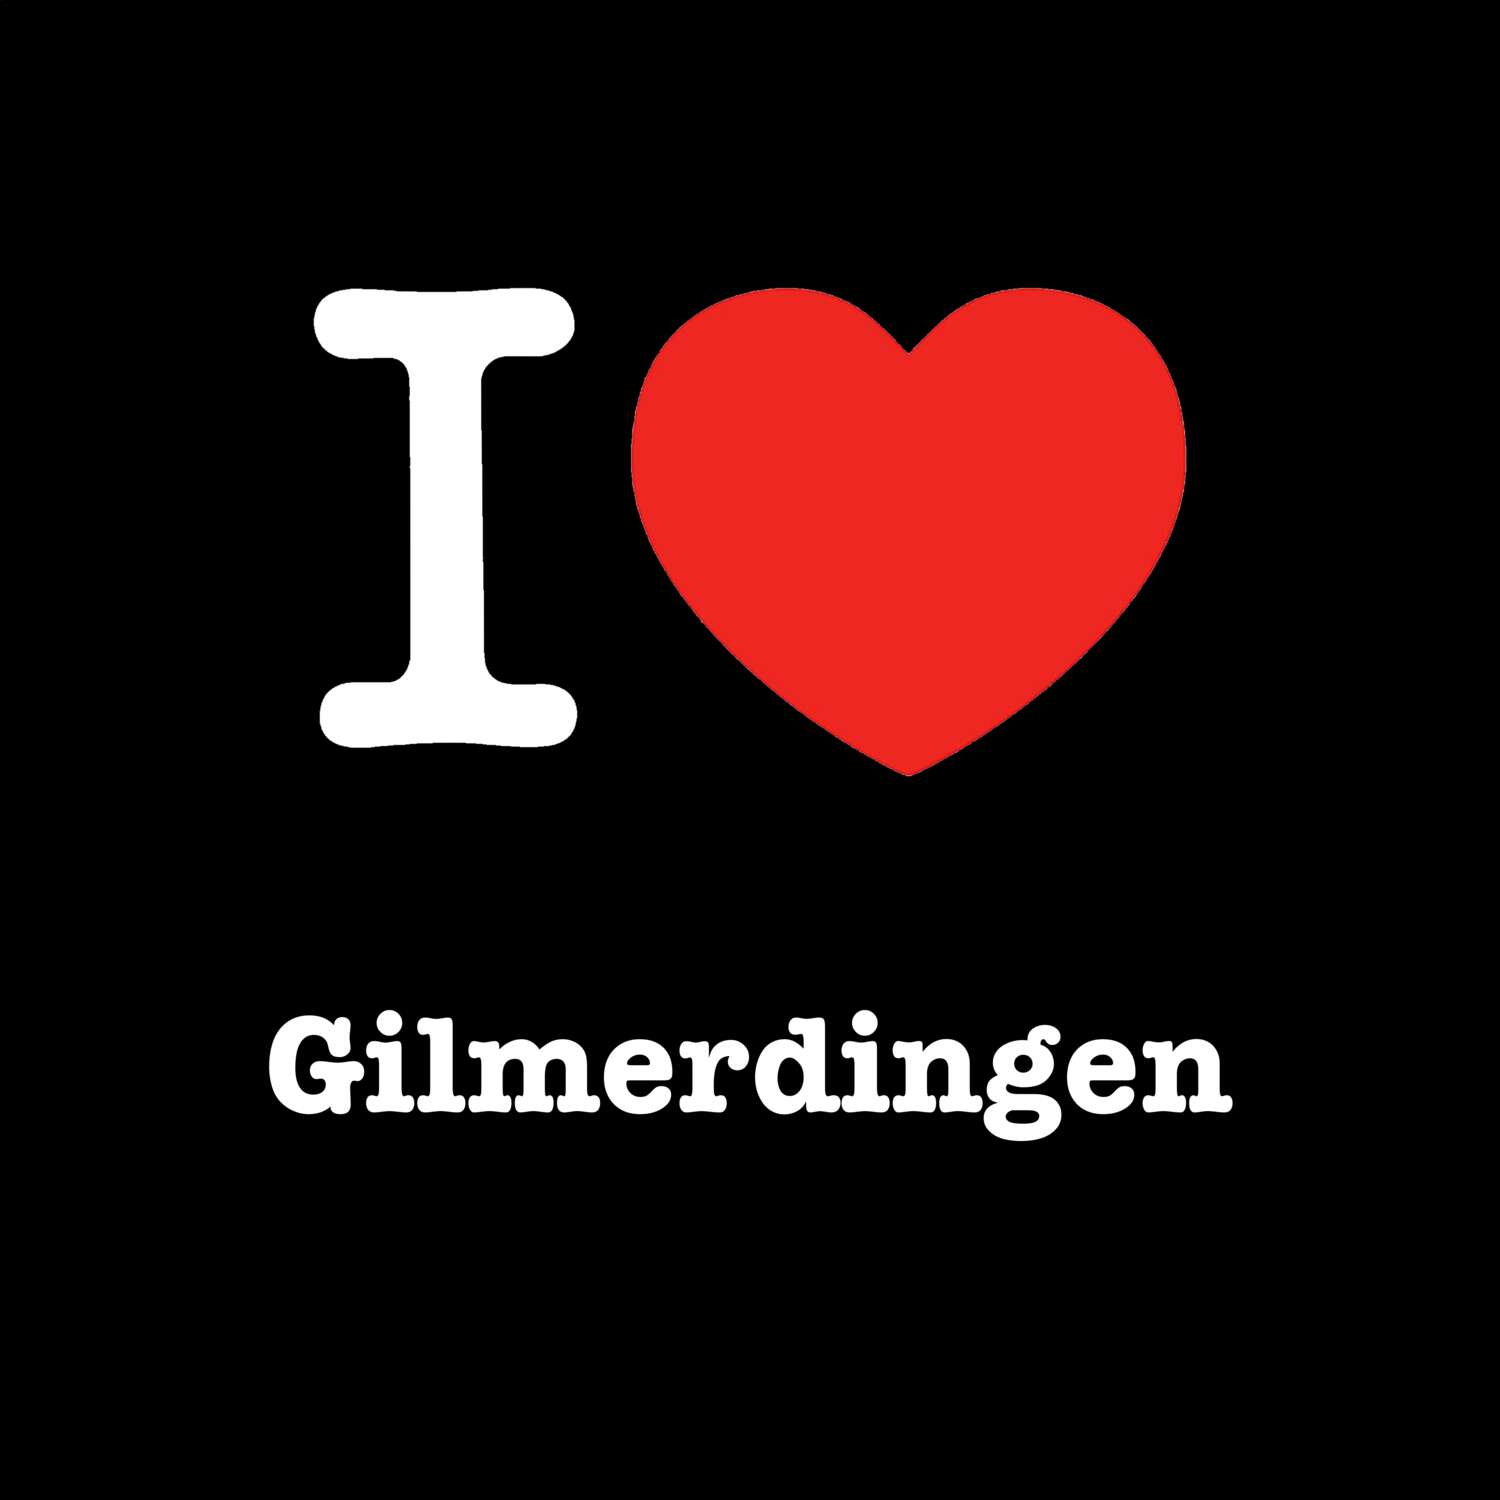 Gilmerdingen T-Shirt »I love«